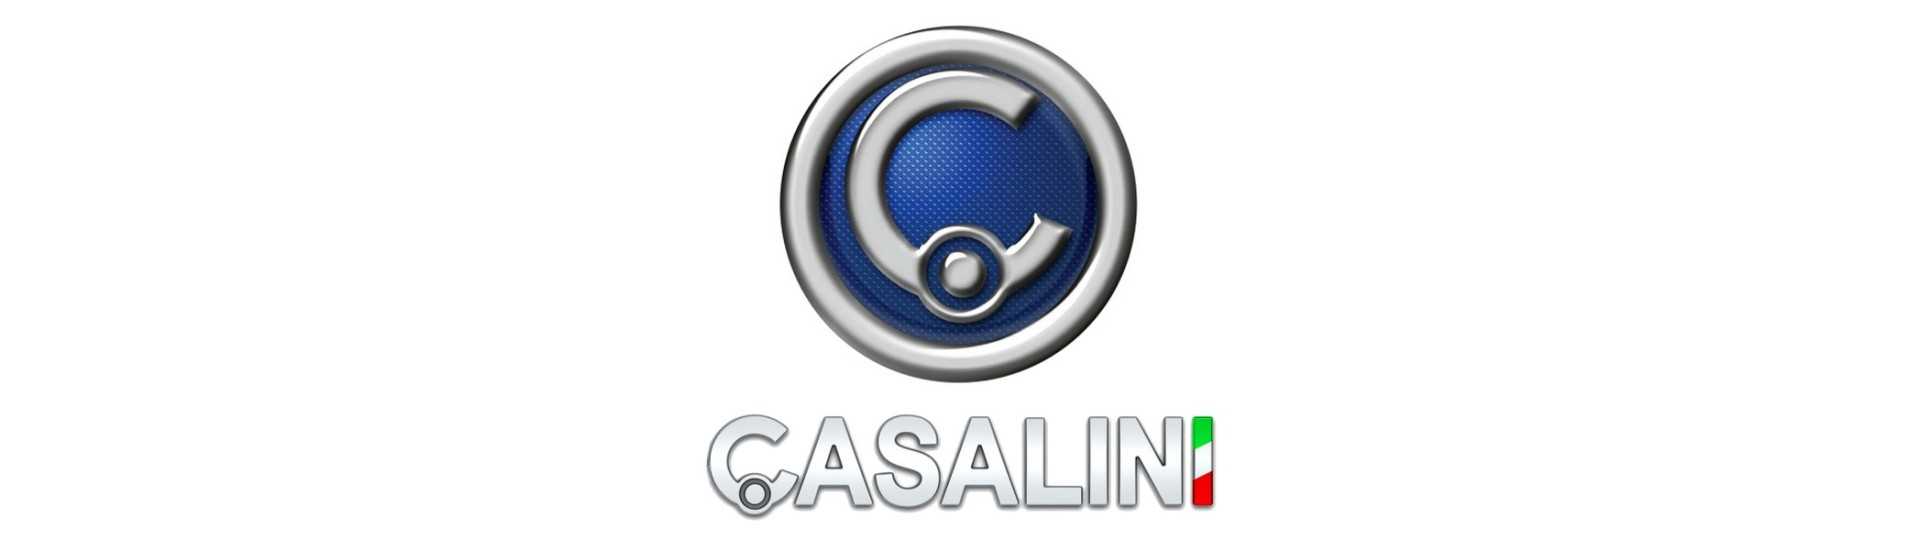 Insonorização do motor ao melhor preço para um carro sem licença Casalini